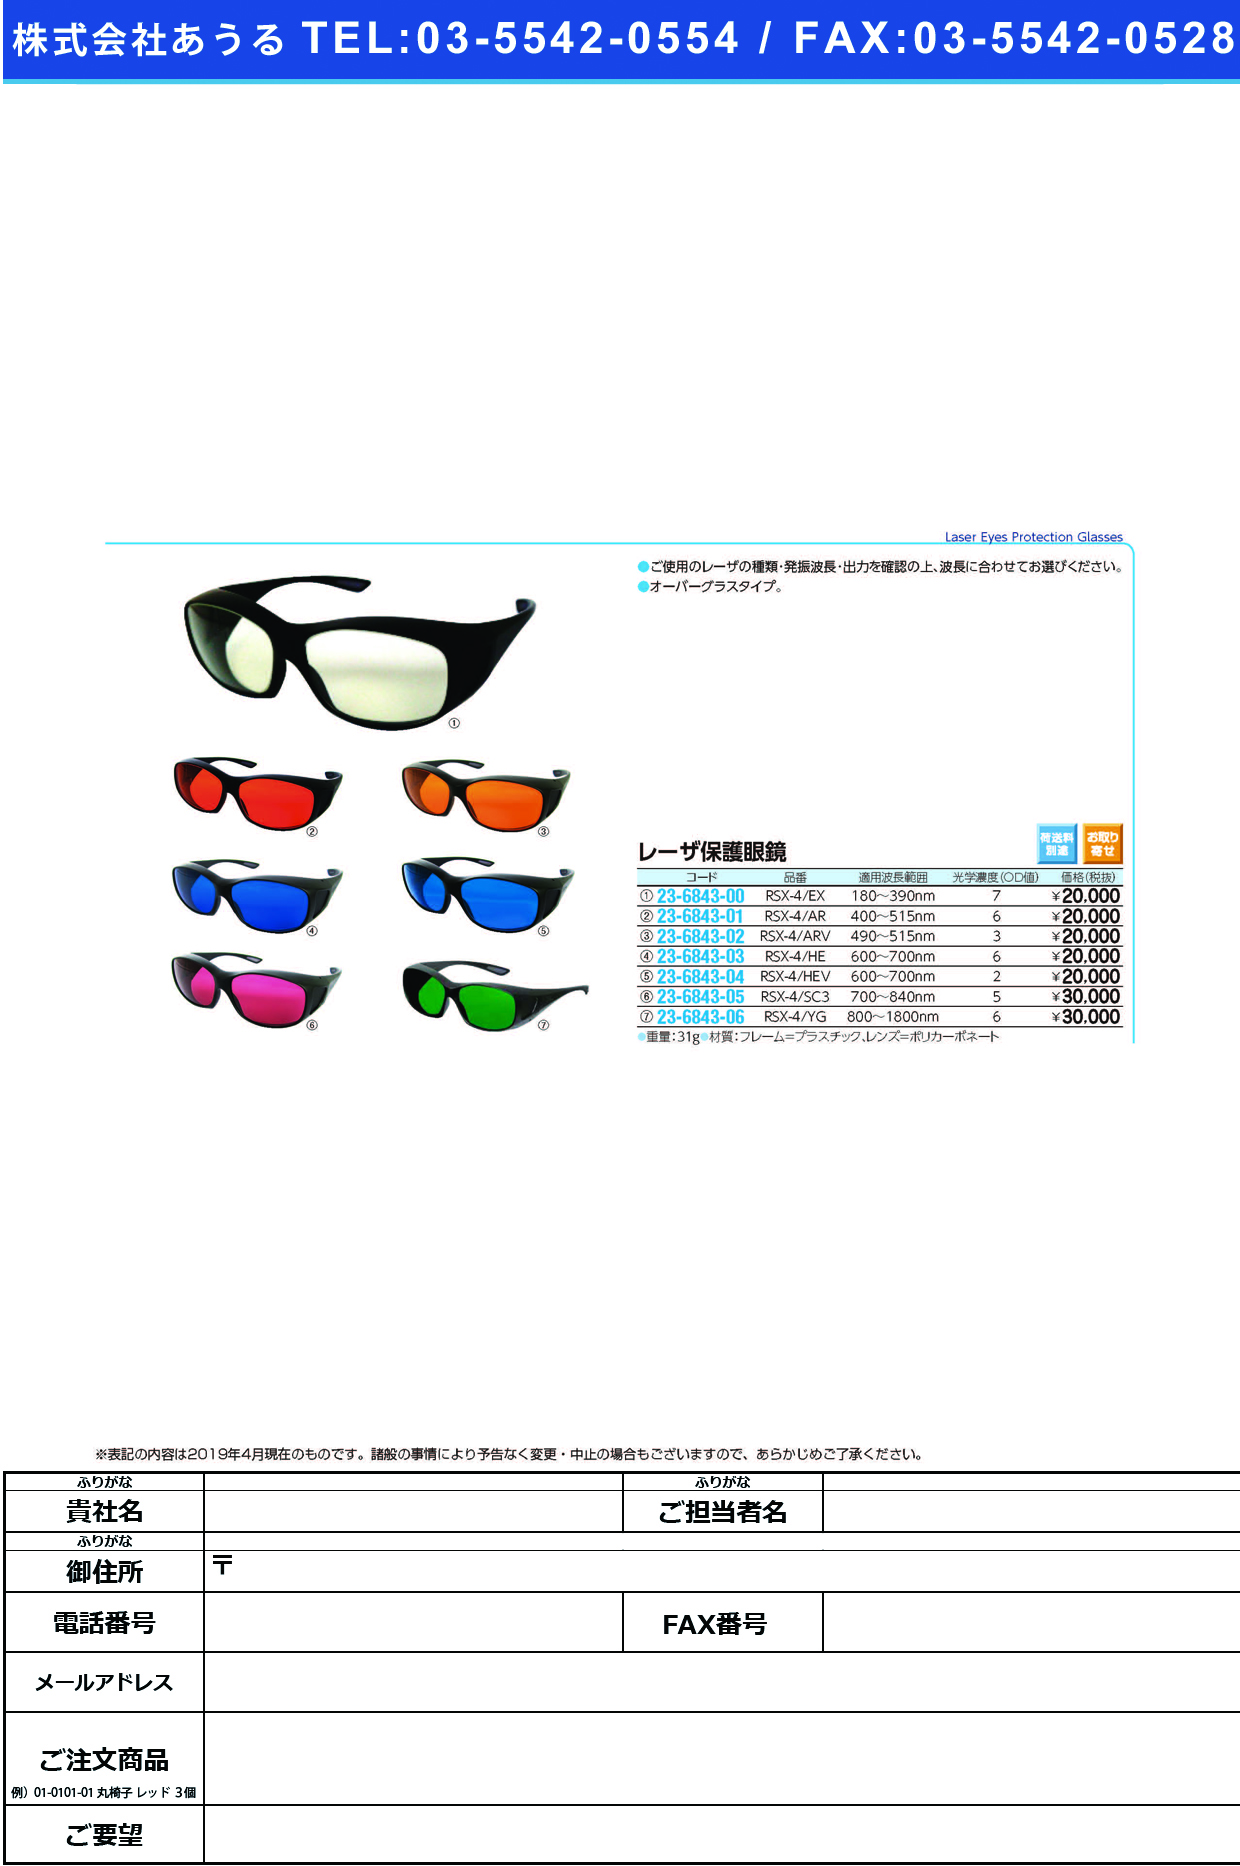 (23-6843-00)レーザ保護眼鏡 RSX-4/EX ﾚｰｻﾞﾎｺﾞﾒｶﾞﾈ【1個単位】【2019年カタログ商品】